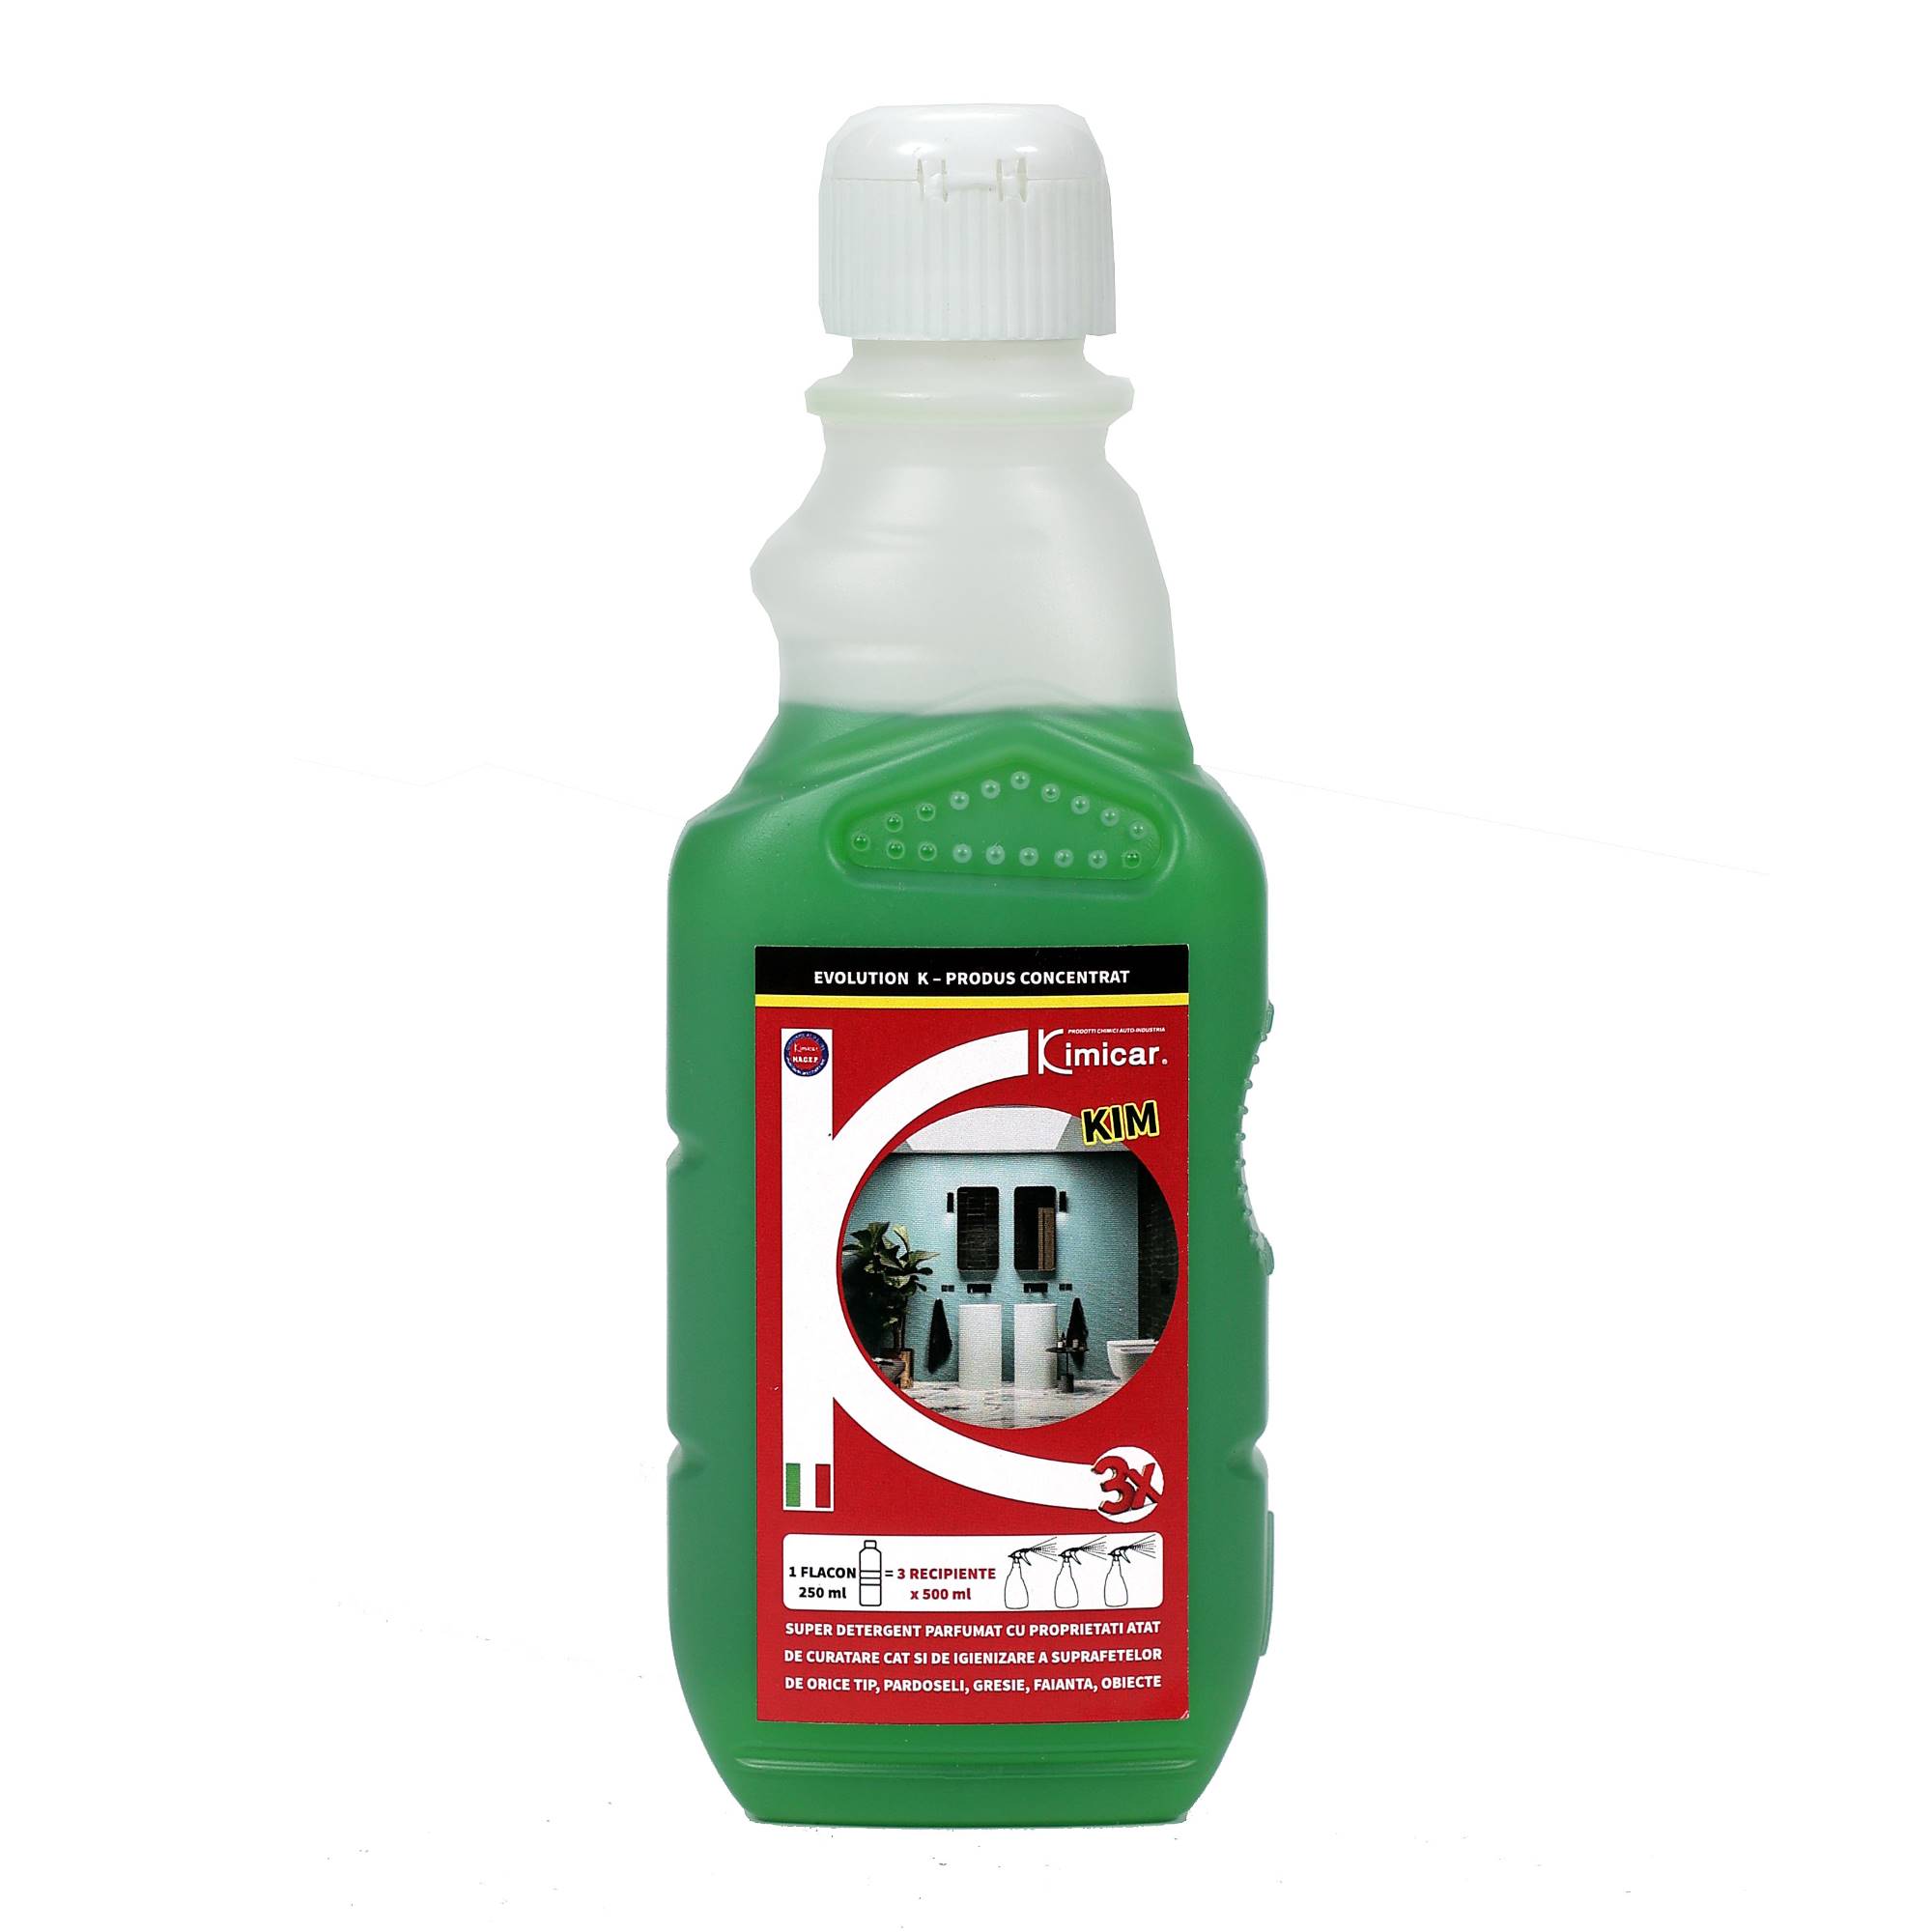 KIM detergent parfumat pentru curatare si igienizare a suprafetelor de orice tip 250 ml